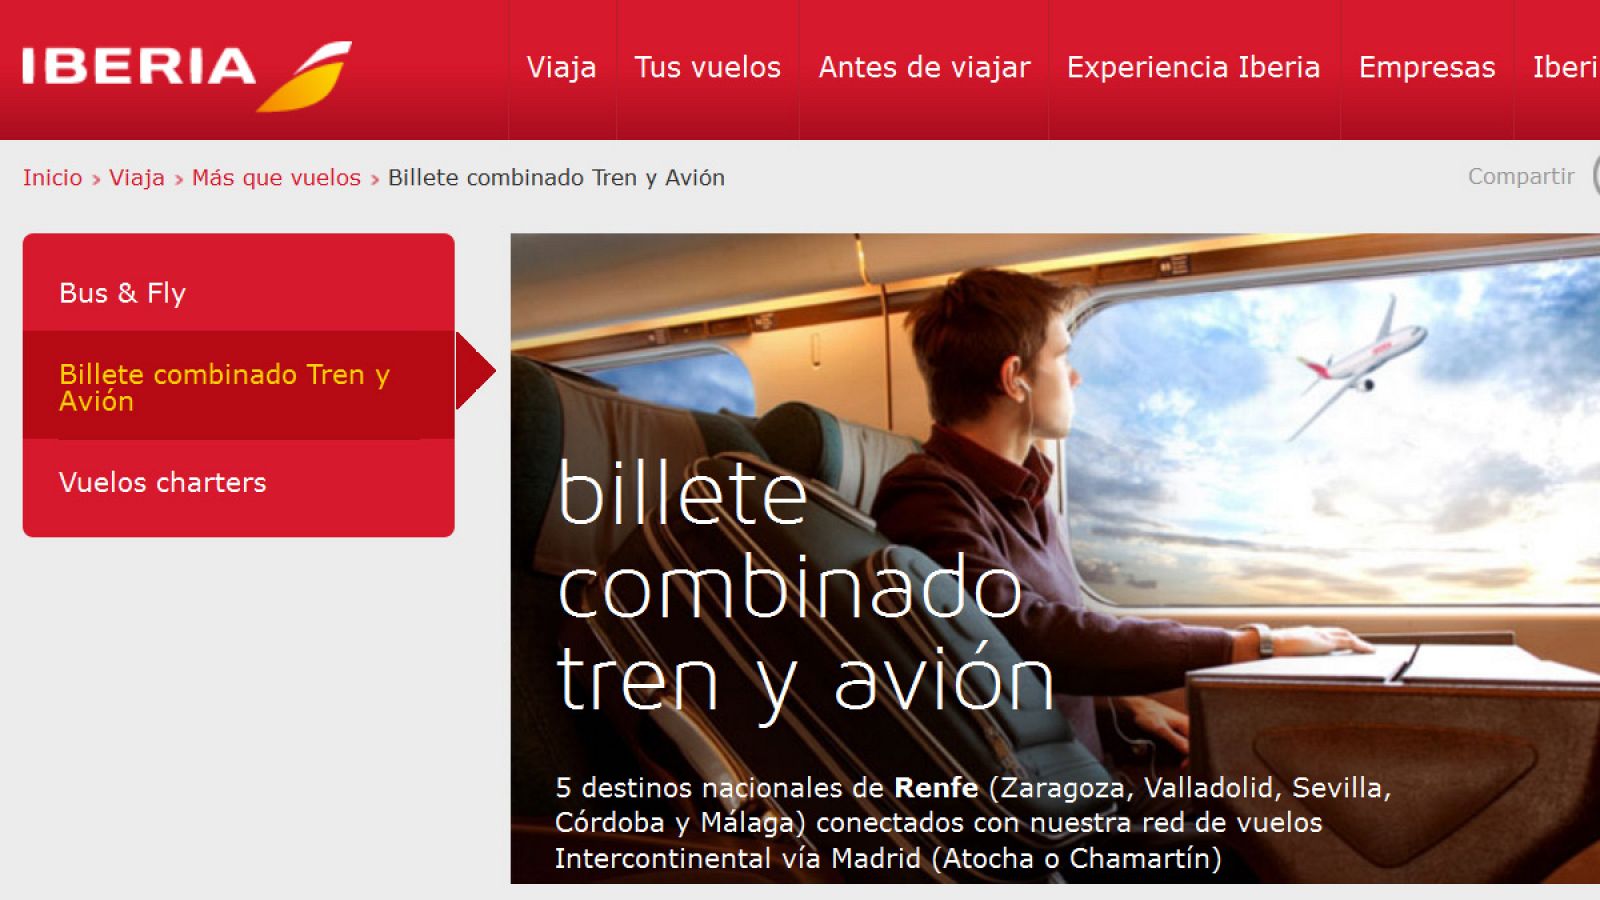 Información sobre el nuevo billete único avión-tren publicada este jueves en la web de Iberia